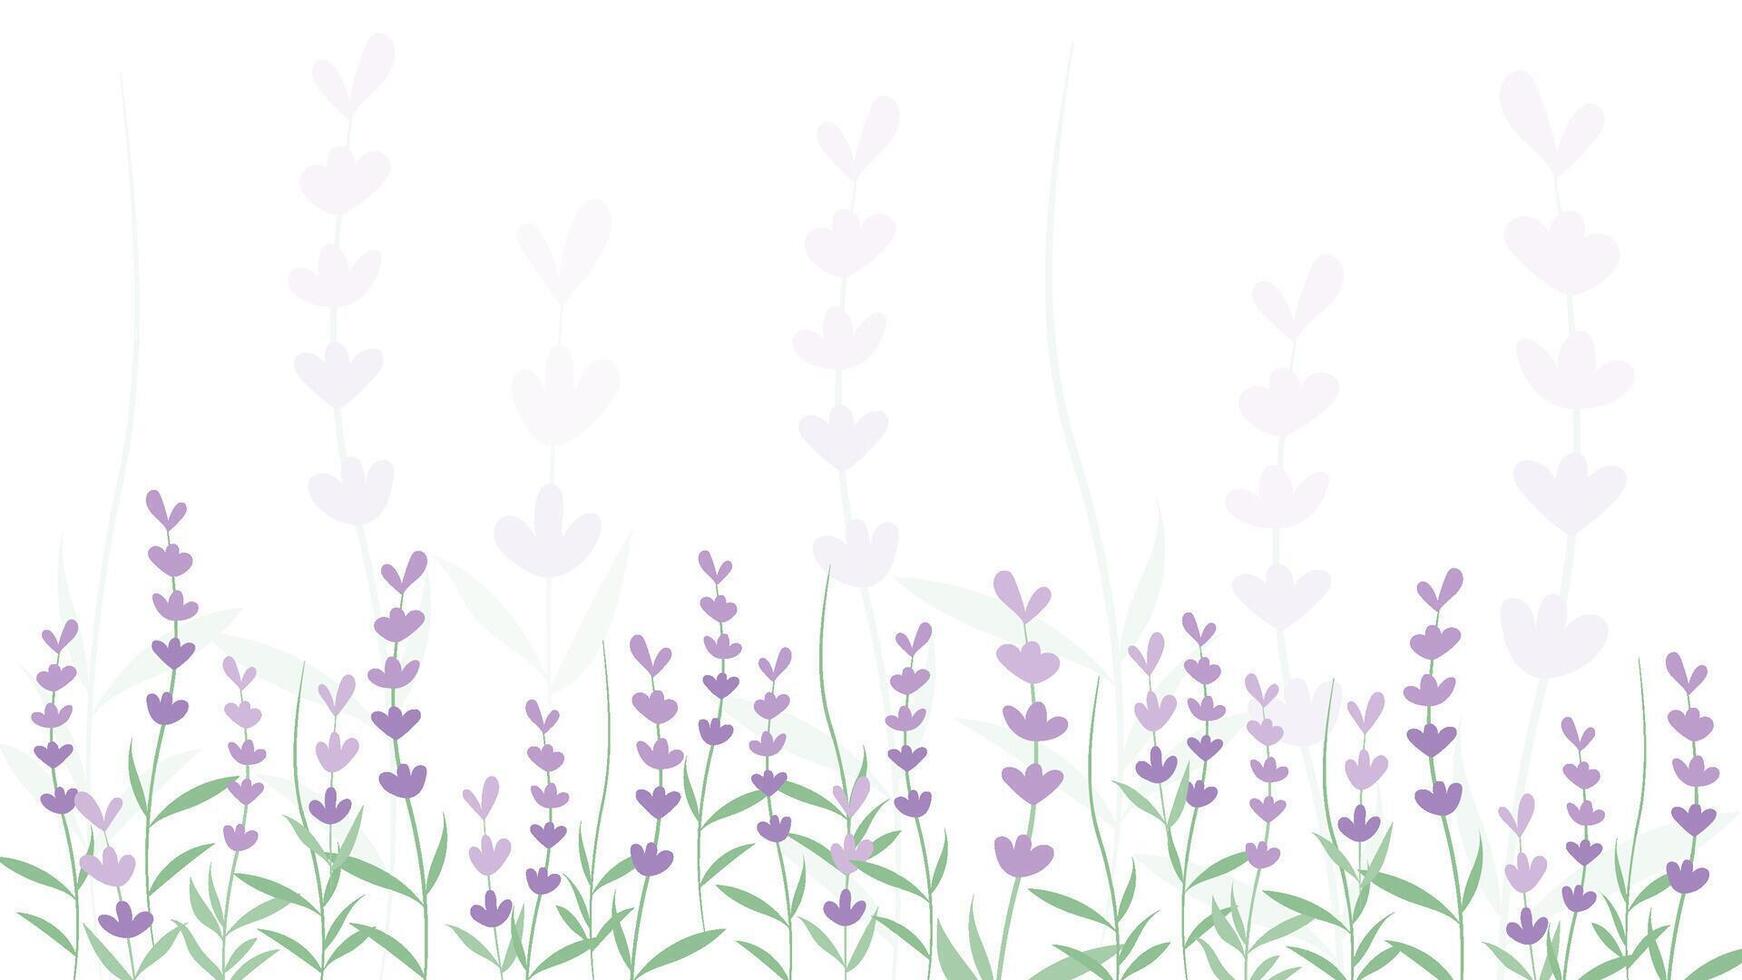 Abstract Lavender flower background Vector design floral border frame